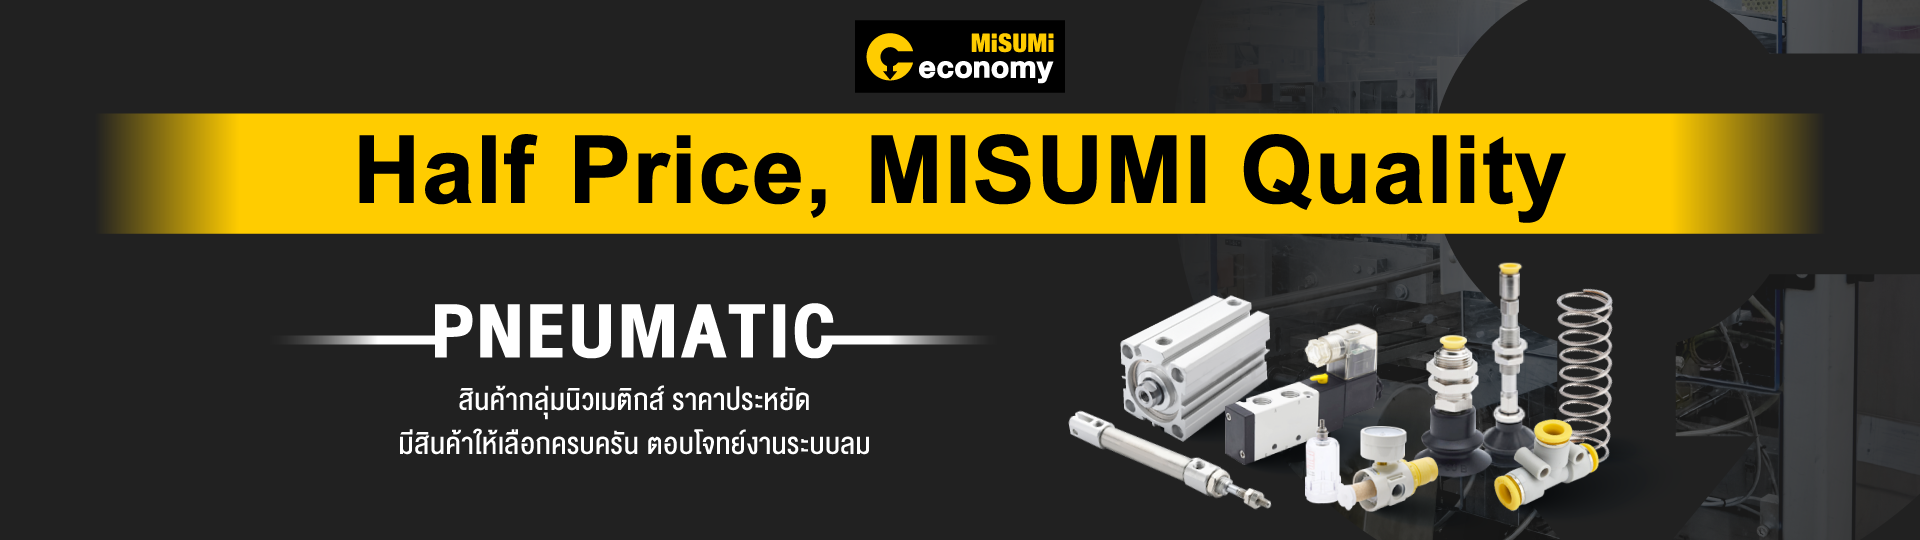 สินค้ากลุ่ม Pneumatic รุ่น Economy Series